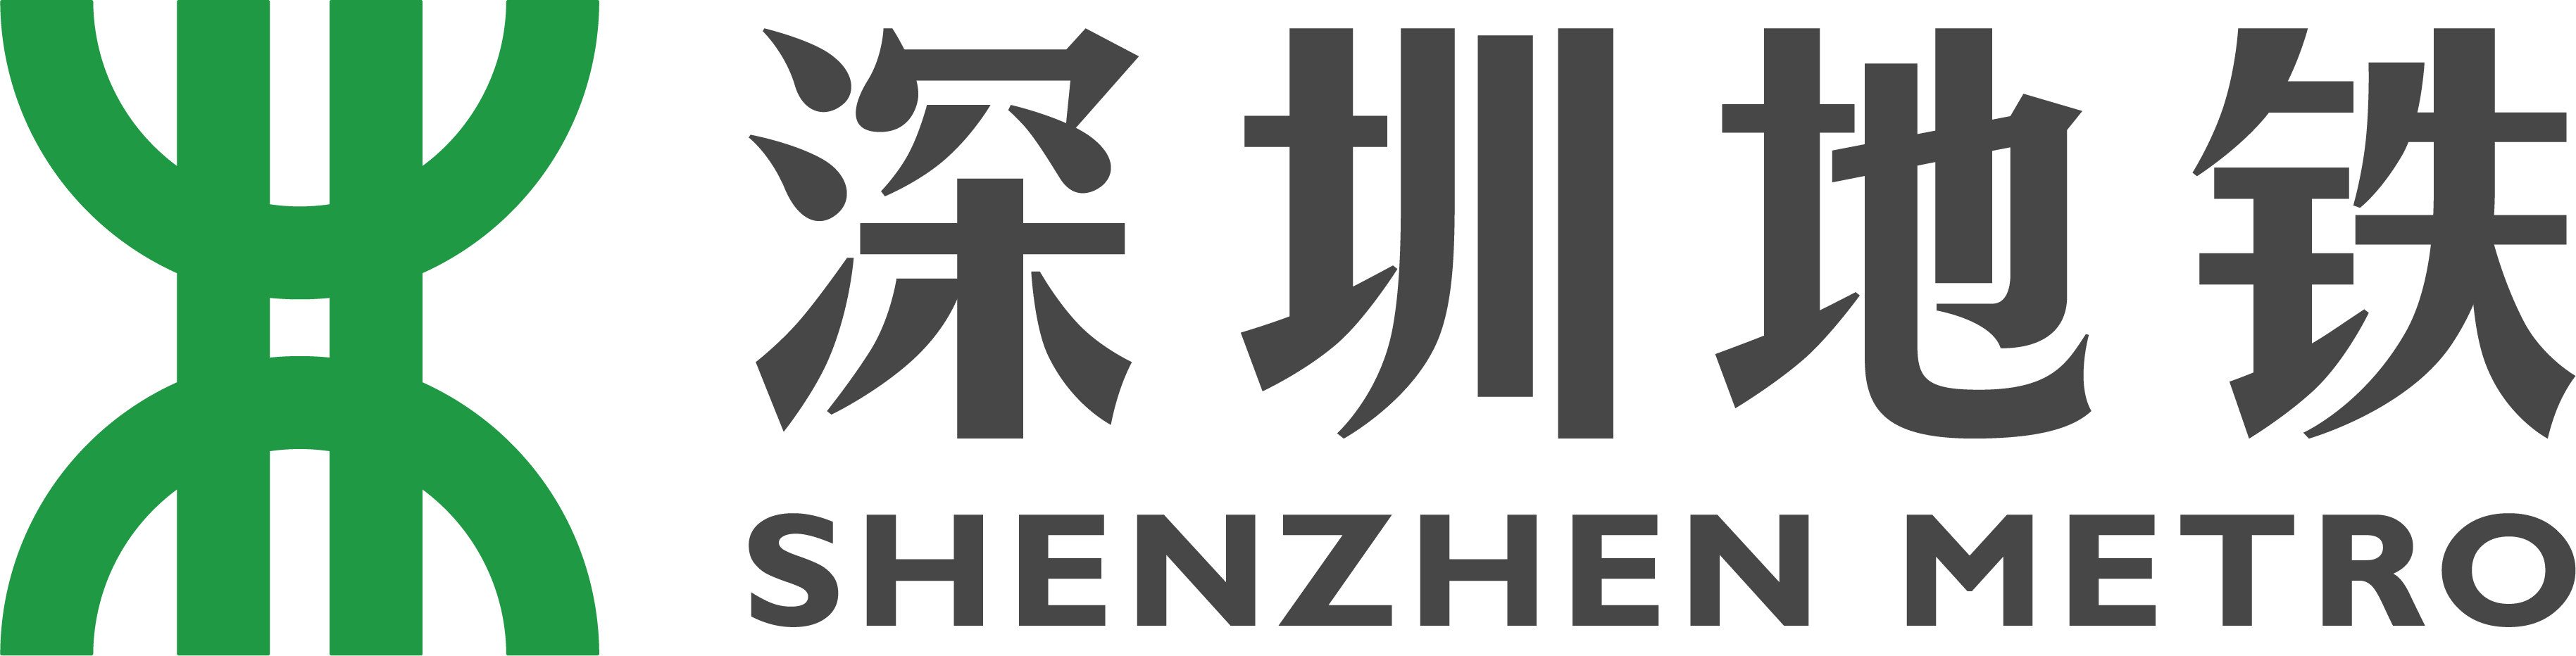 深圳地铁logo.png